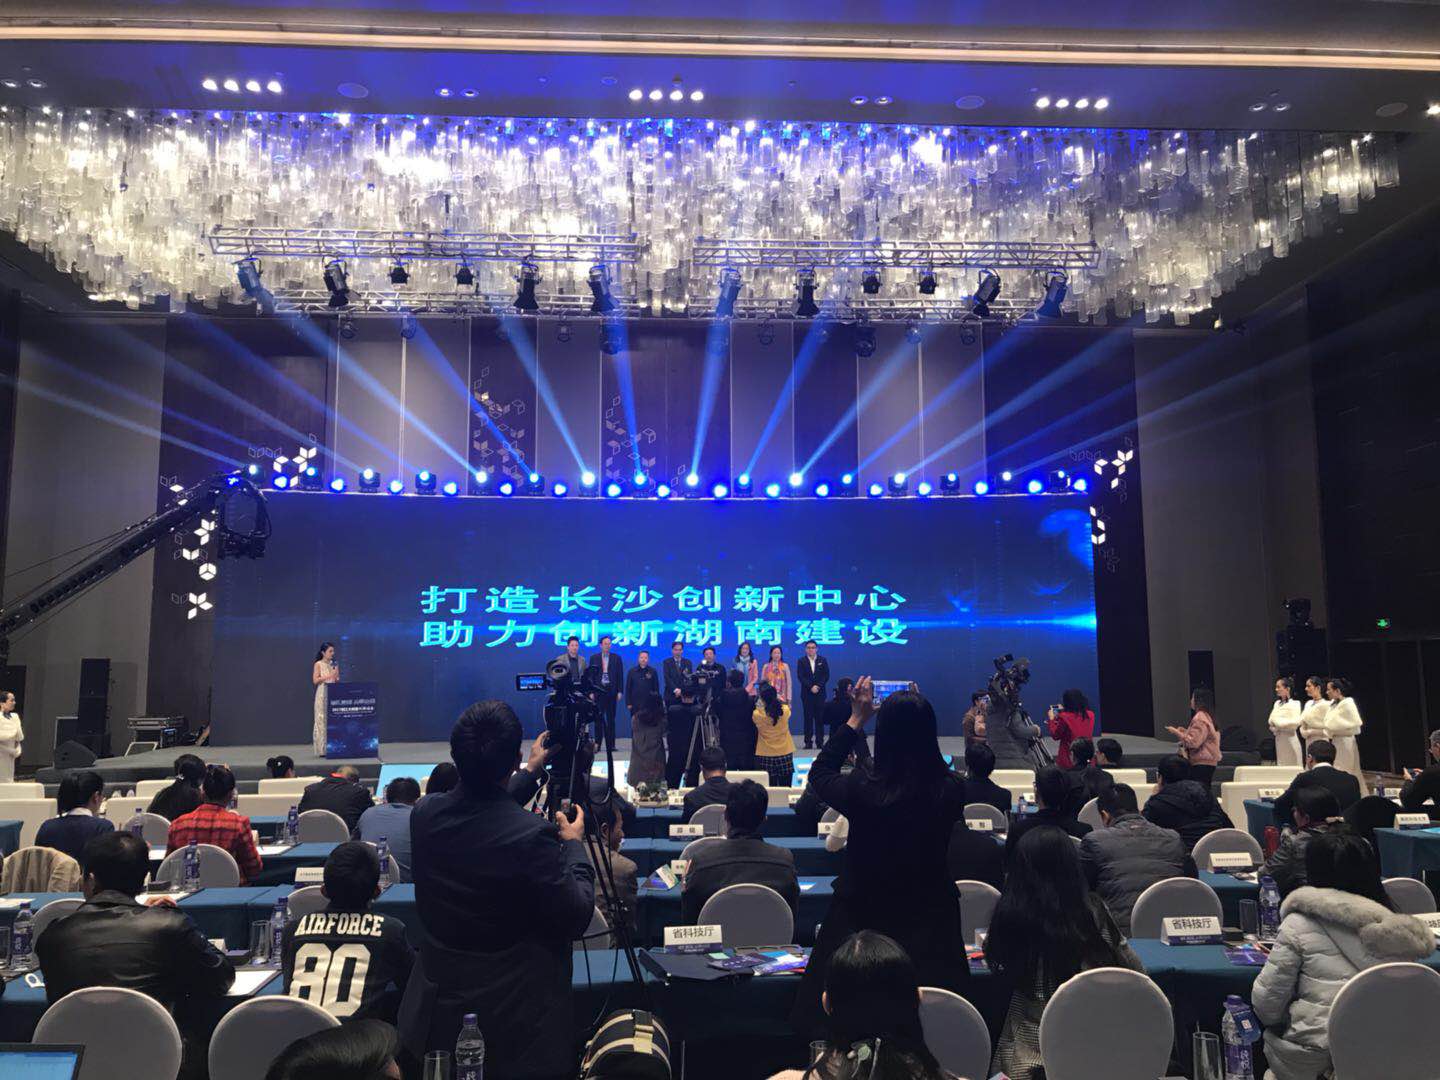 2017年第二届湘江大数据创新峰会在长沙举行